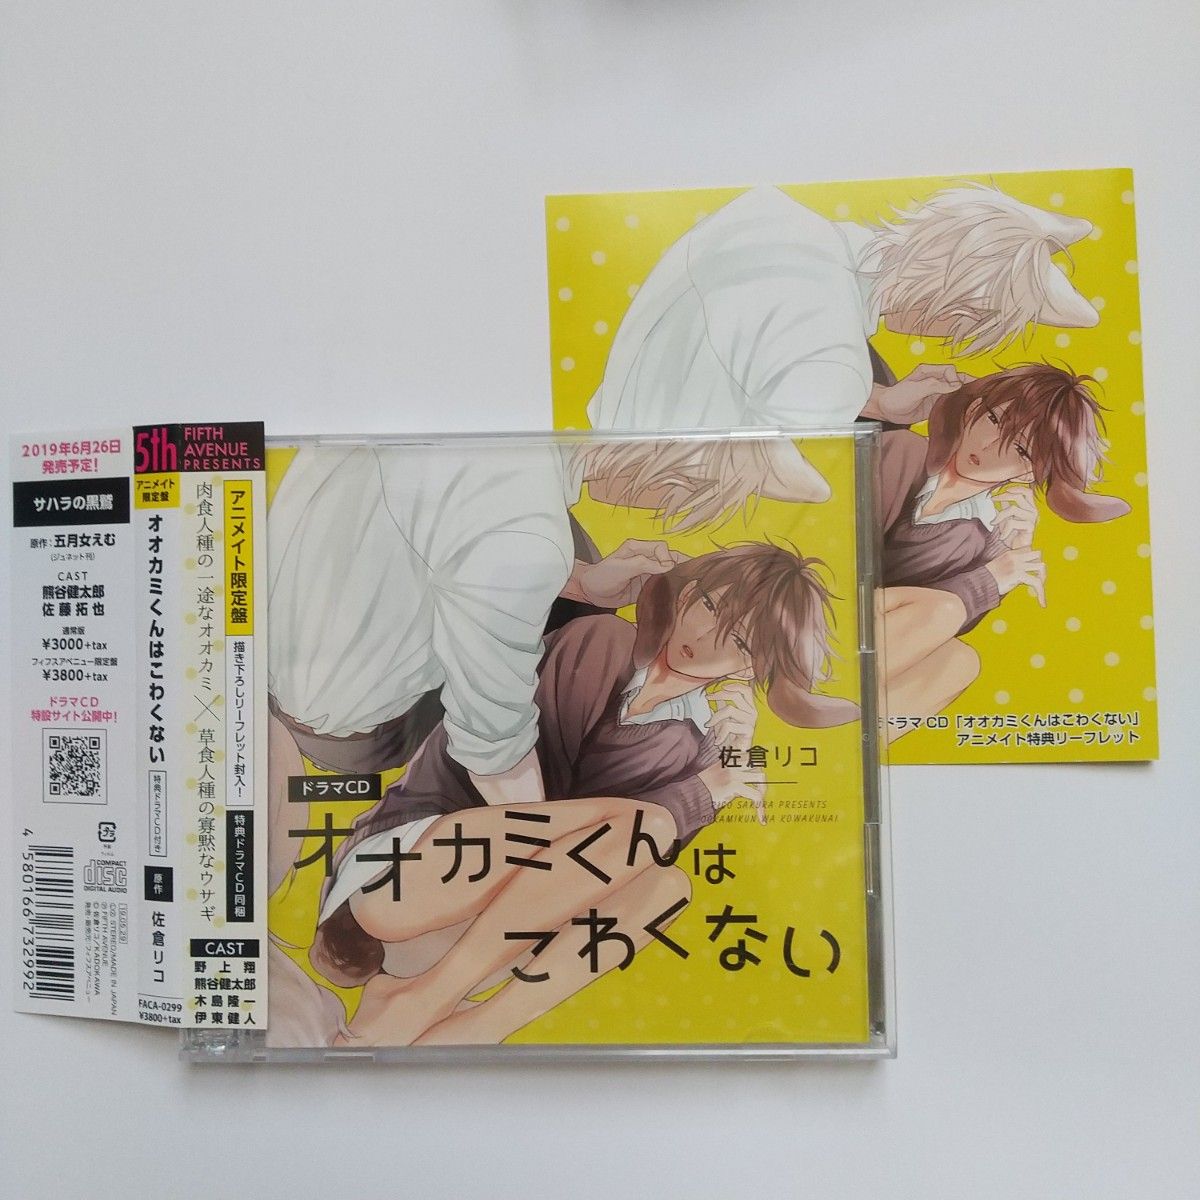 アニメイト限定盤 オオカミくんはこわくない 佐倉りこ ドラマCD BLCD